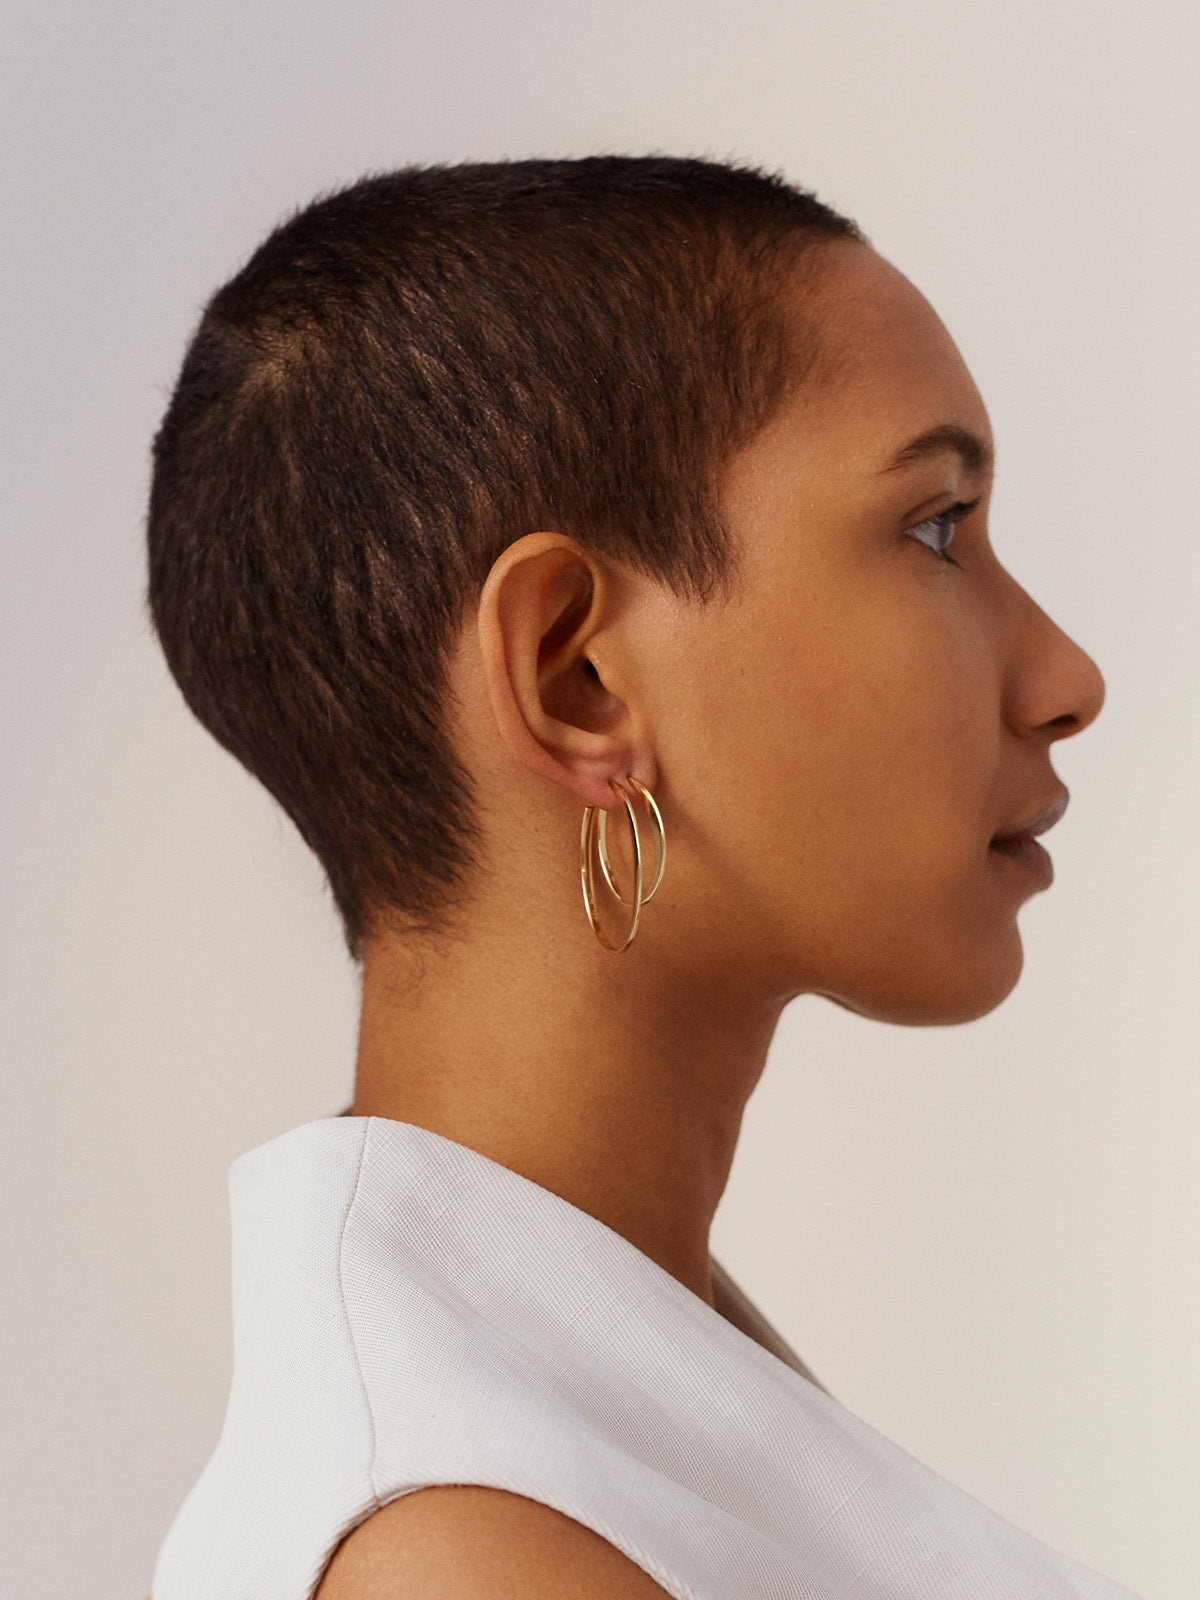 KINRADEN APS GLOW SMALL Earring - 18k gold Earrings